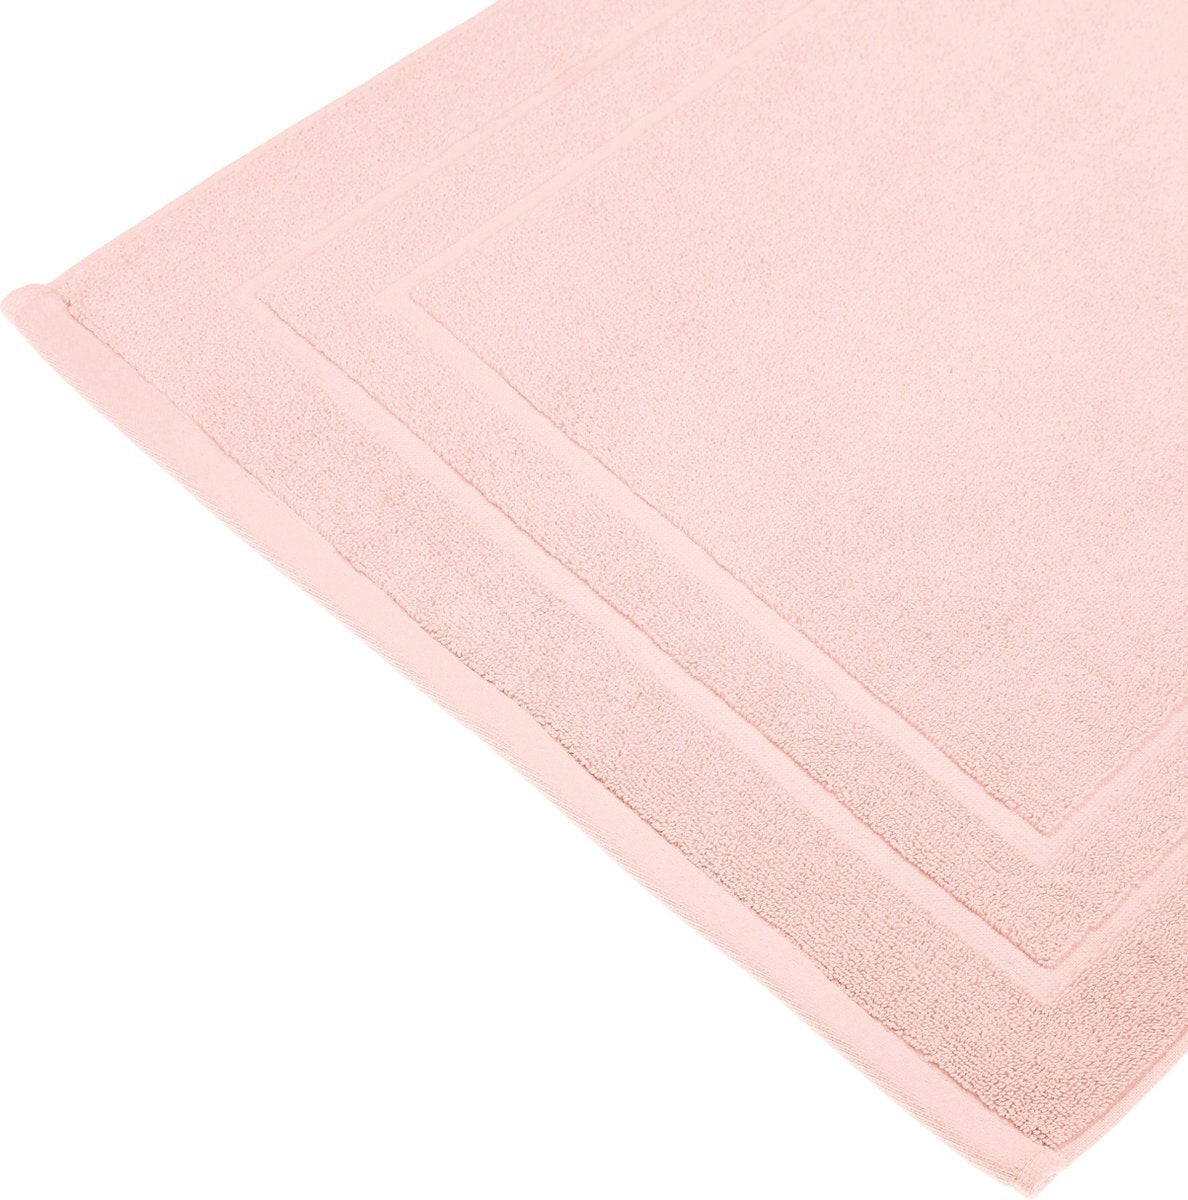 5Five Comfort Bathmat pink - 50 x 70 cm - Cotton